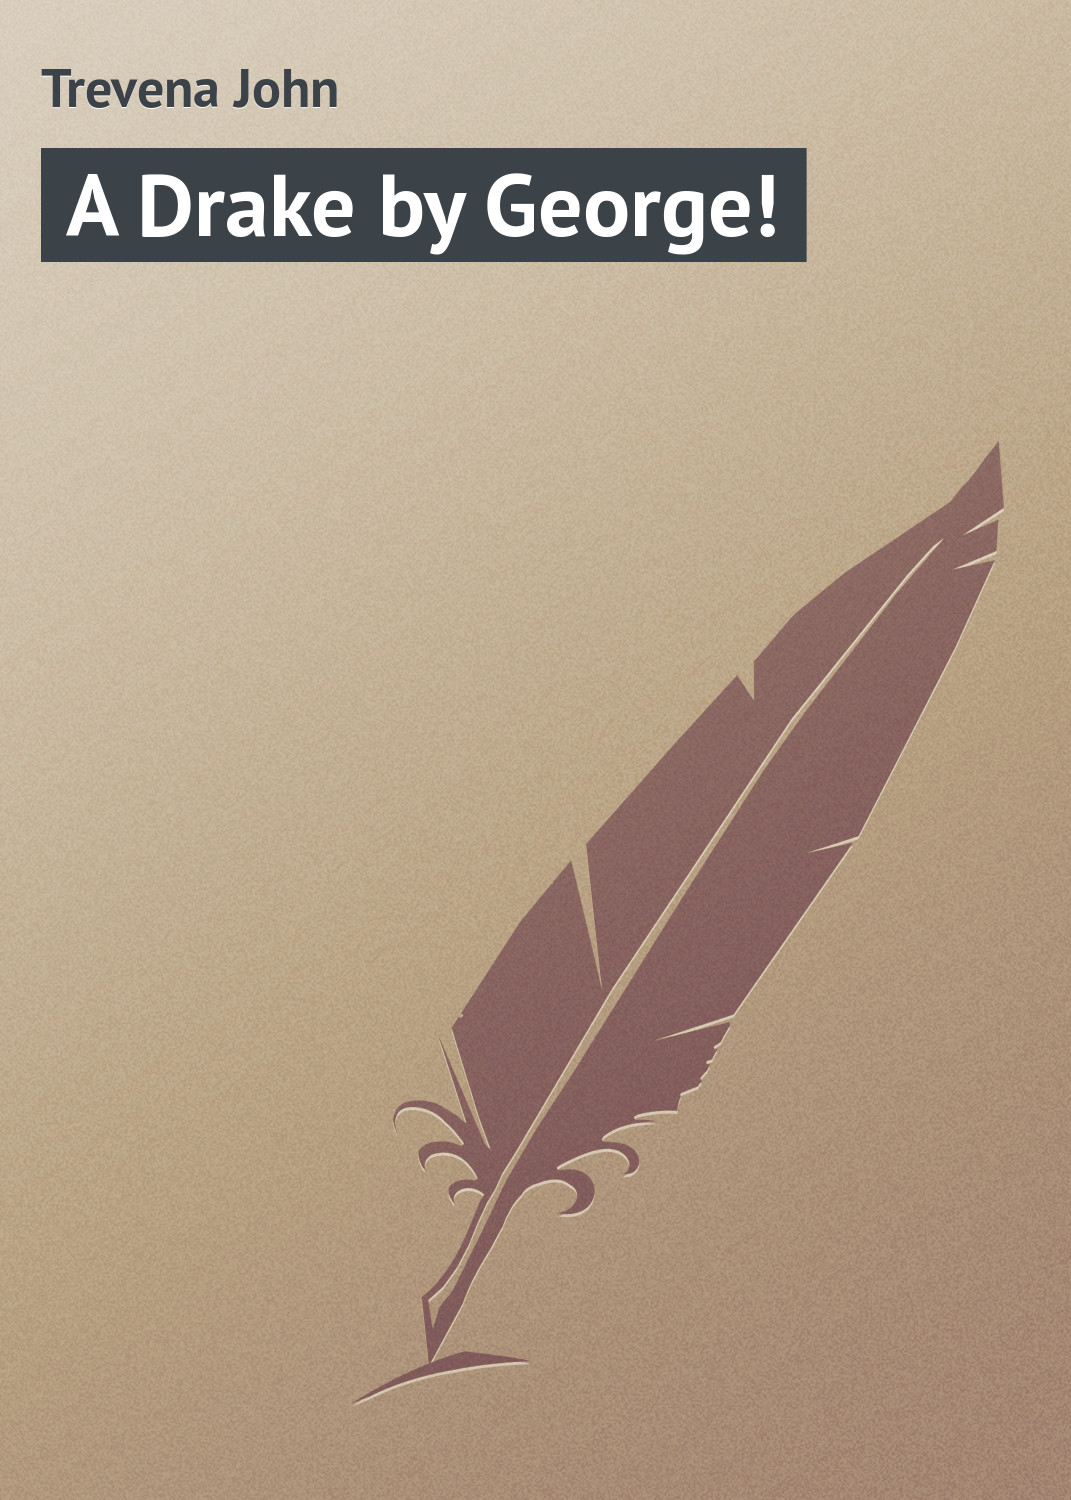 Книга A Drake by George! из серии , созданная John Trevena, может относится к жанру Зарубежная классика, Зарубежный юмор. Стоимость электронной книги A Drake by George! с идентификатором 23154531 составляет 5.99 руб.